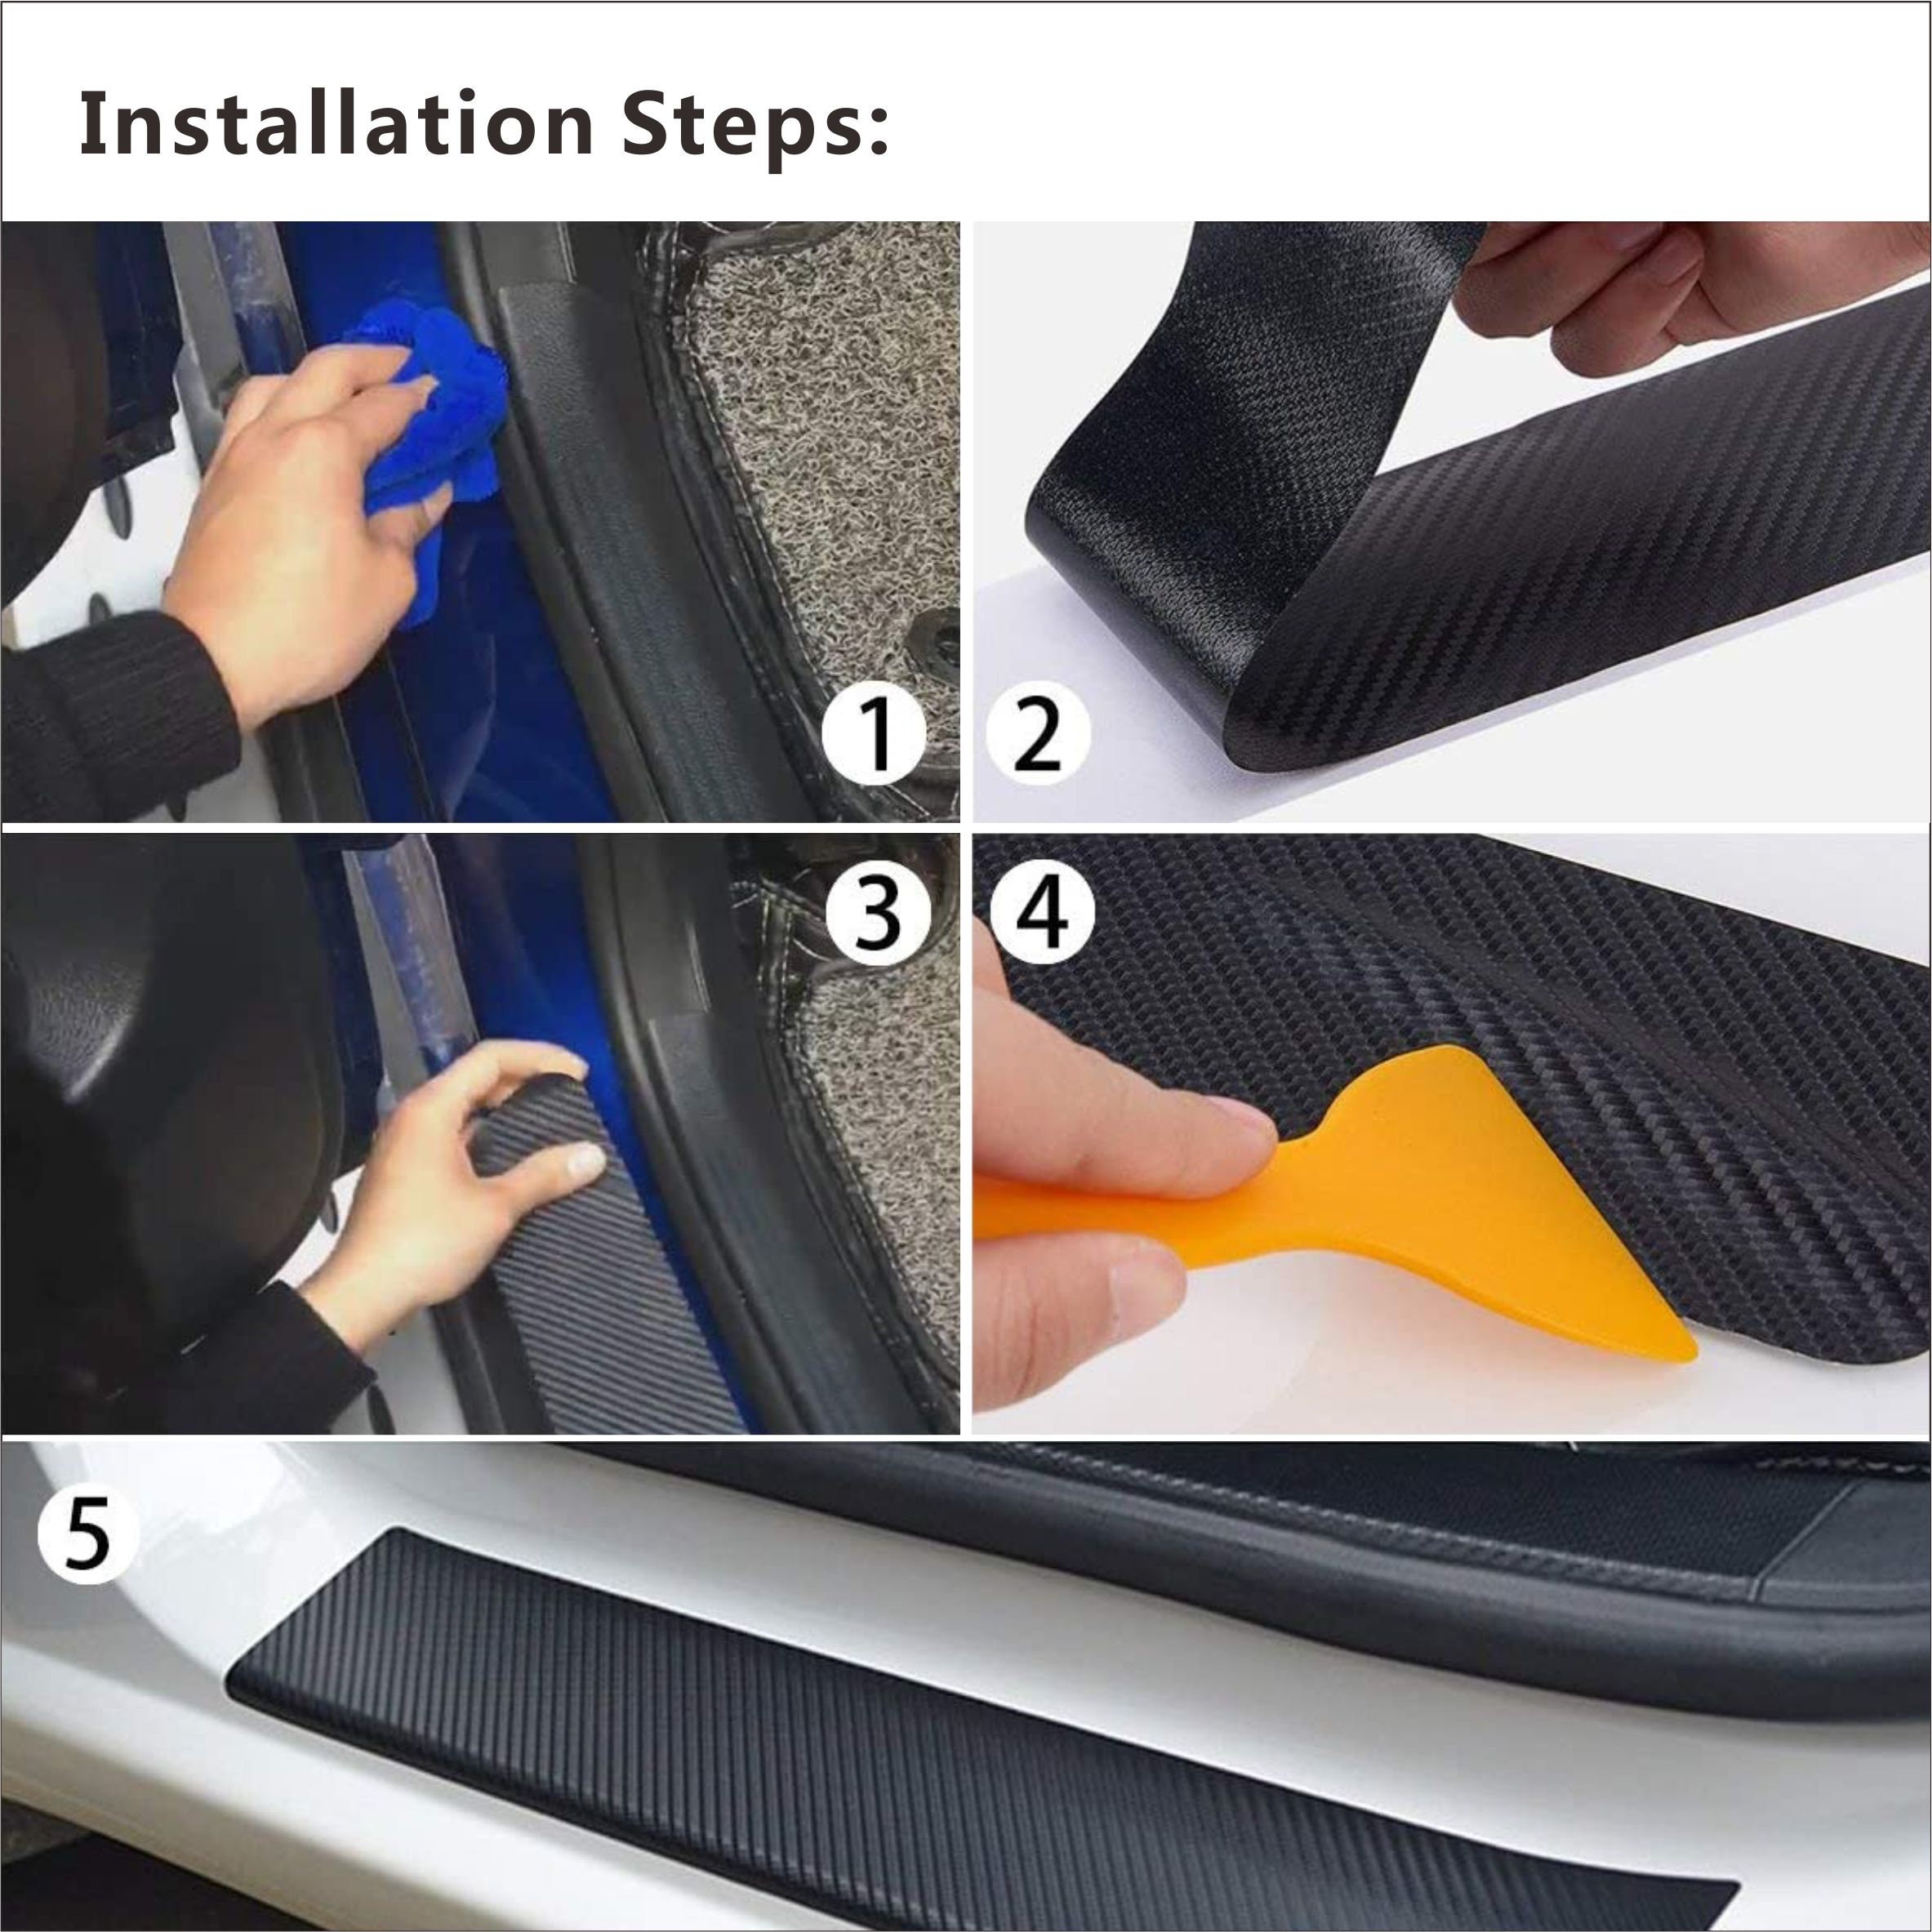 4PCS Car Door Sill Protector Universal 3D Carbon Fiber Texture